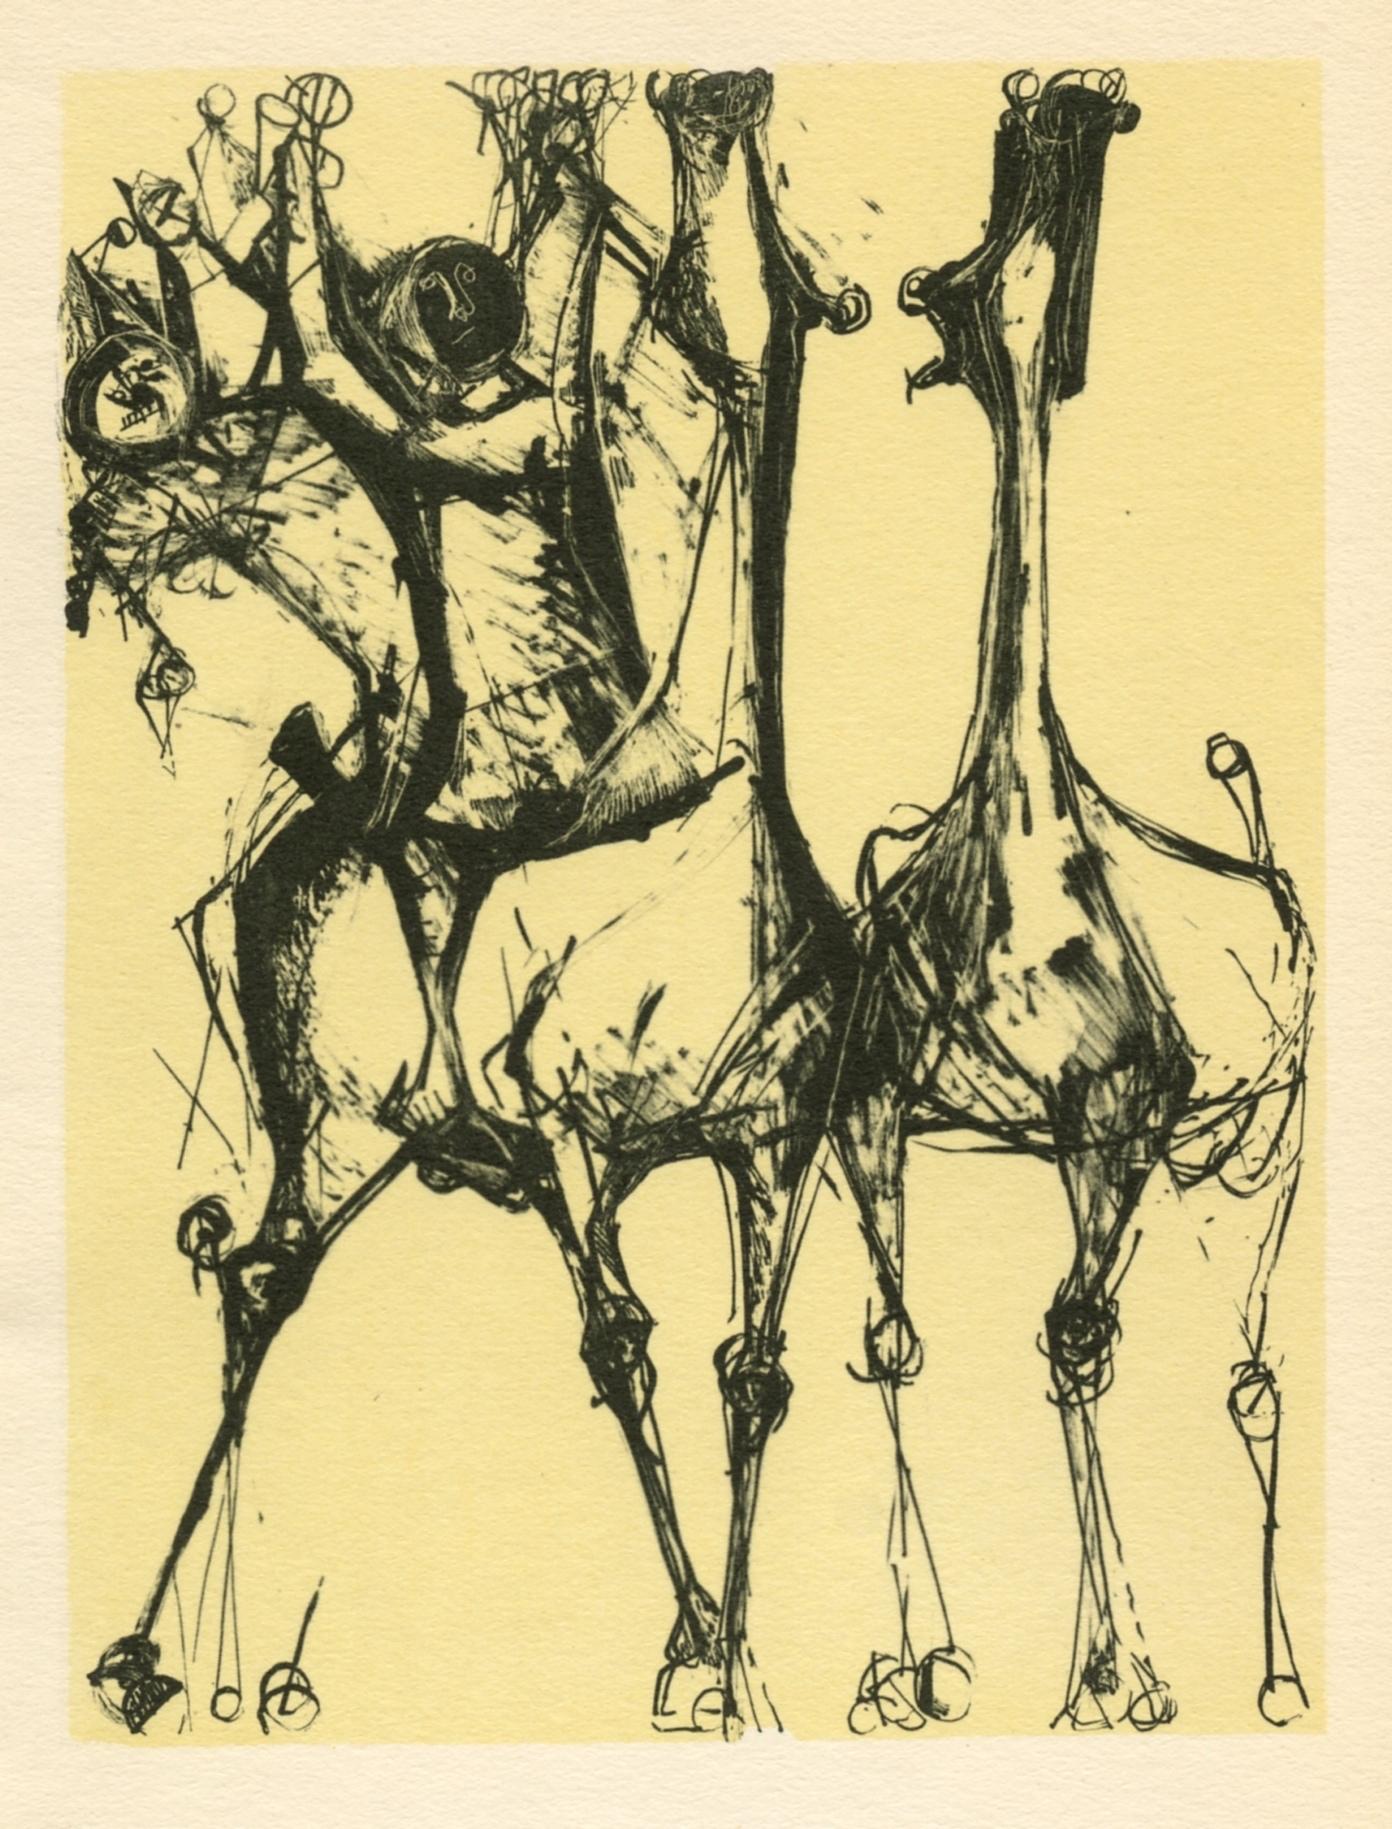 Medium: Pochoir (nach der Lithographie). Gedruckt im Atelier von Daniel Jacomet, veröffentlicht 1955 in Paris von Heinz Berggruen. Das Bild misst 5 x 4 Zoll (130 x 100 mm). Nicht unterzeichnet. 